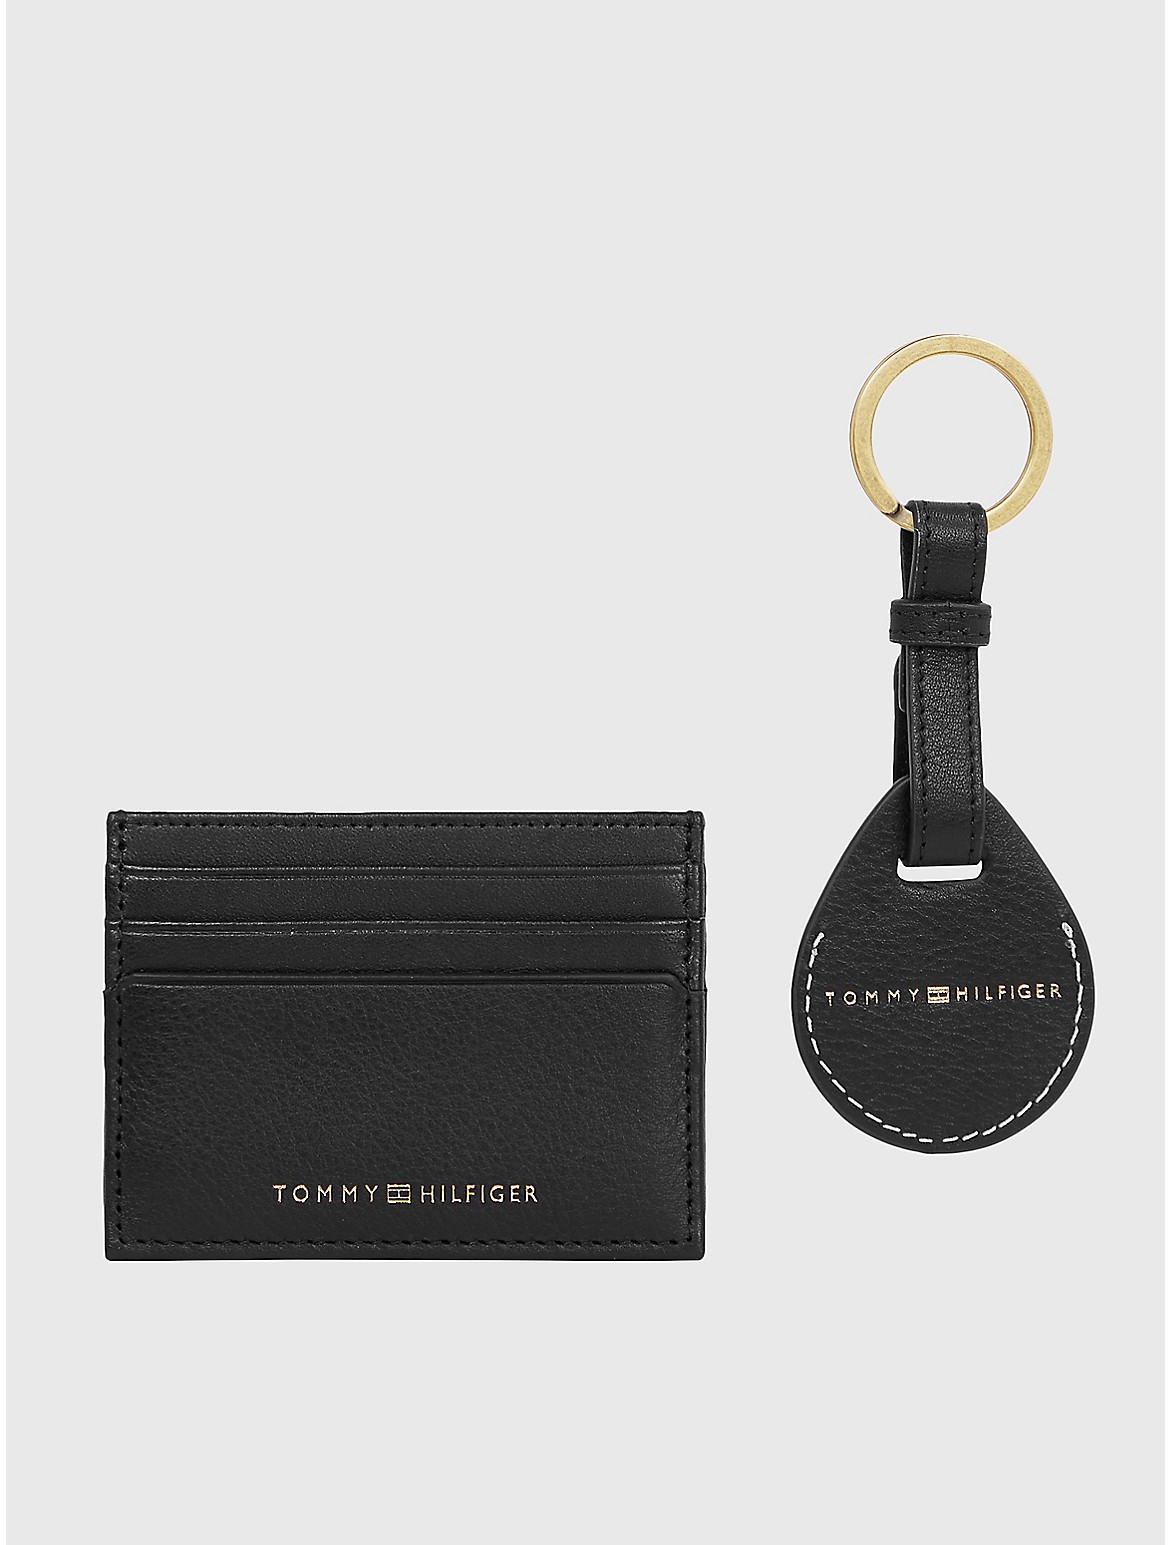 Tommy Hilfiger Men's Airtag & Card Holder Gift Set - Black